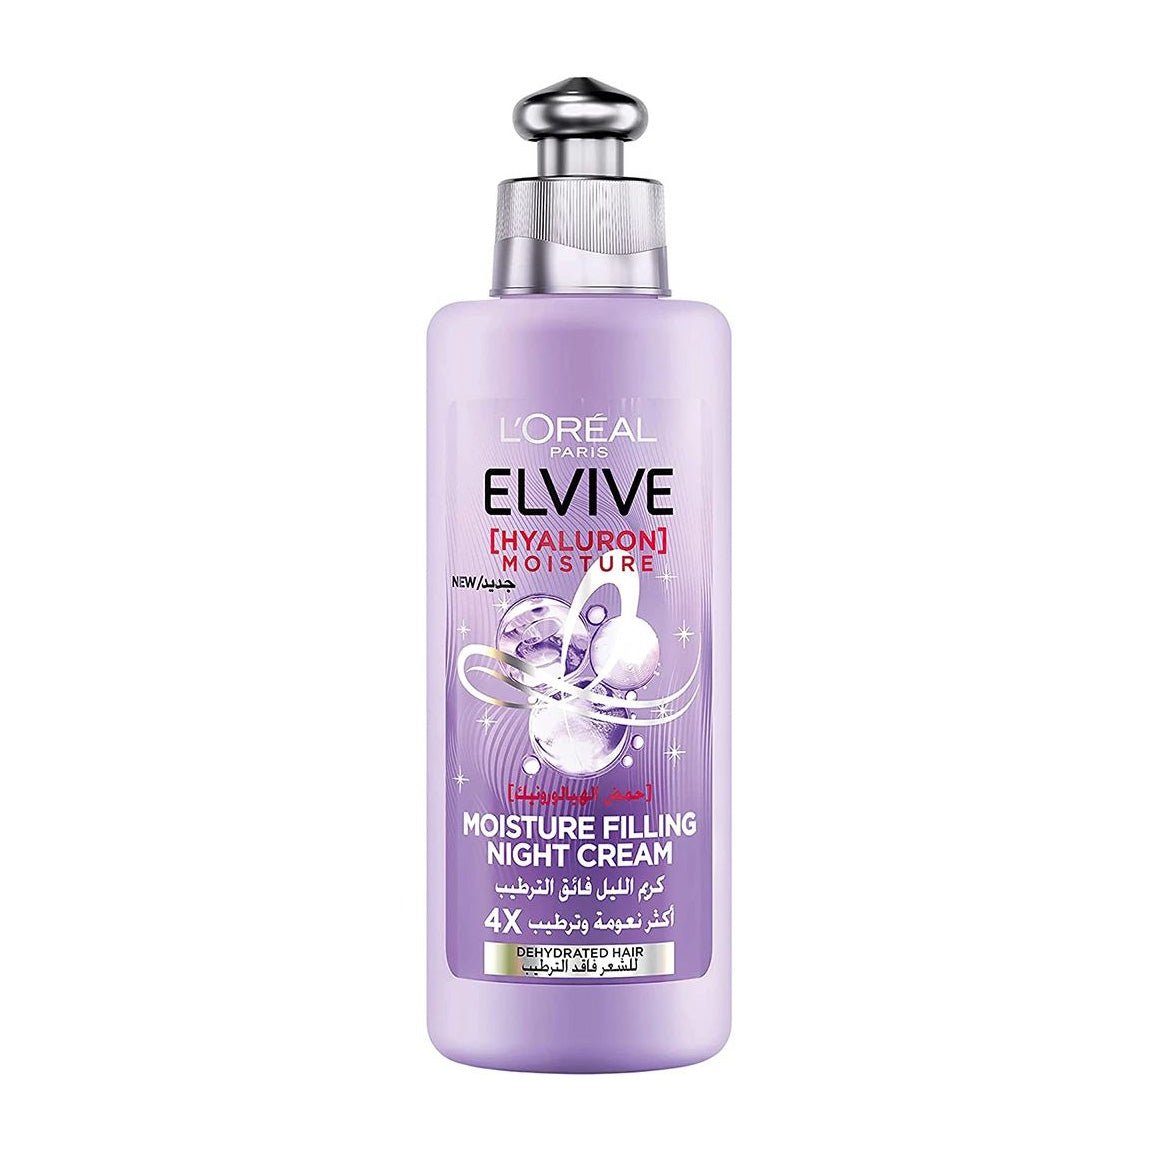 L'Oreal Elvive Hyaluron Moisture Filling Night Hair Cream - 200ml - Bloom Pharmacy